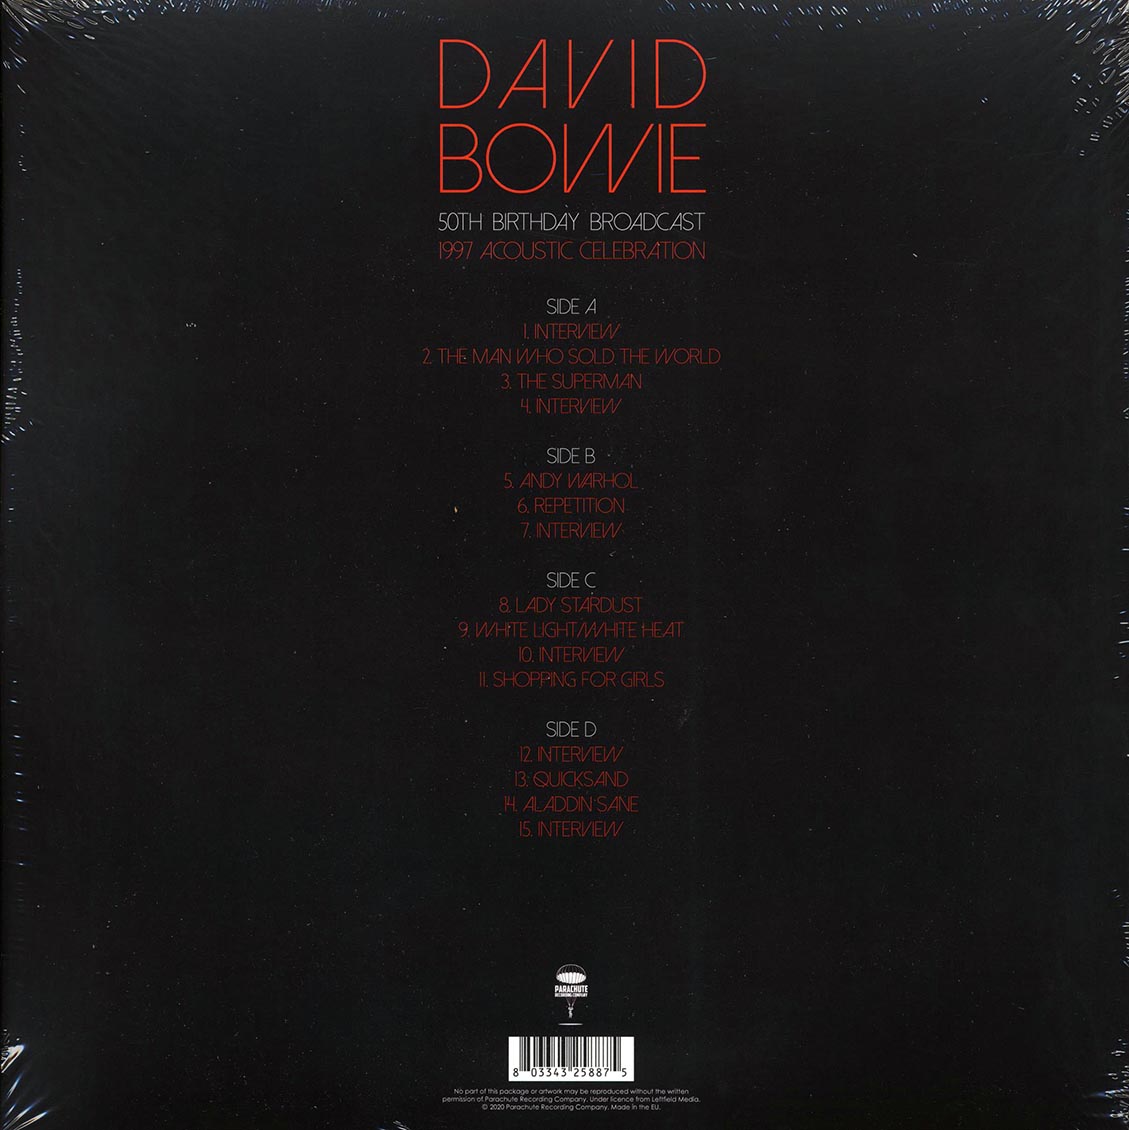 David Bowie - 50th Birthday Broadcast: 1997 Acoustic Celebration (2xLP) - Vinyl LP, LP